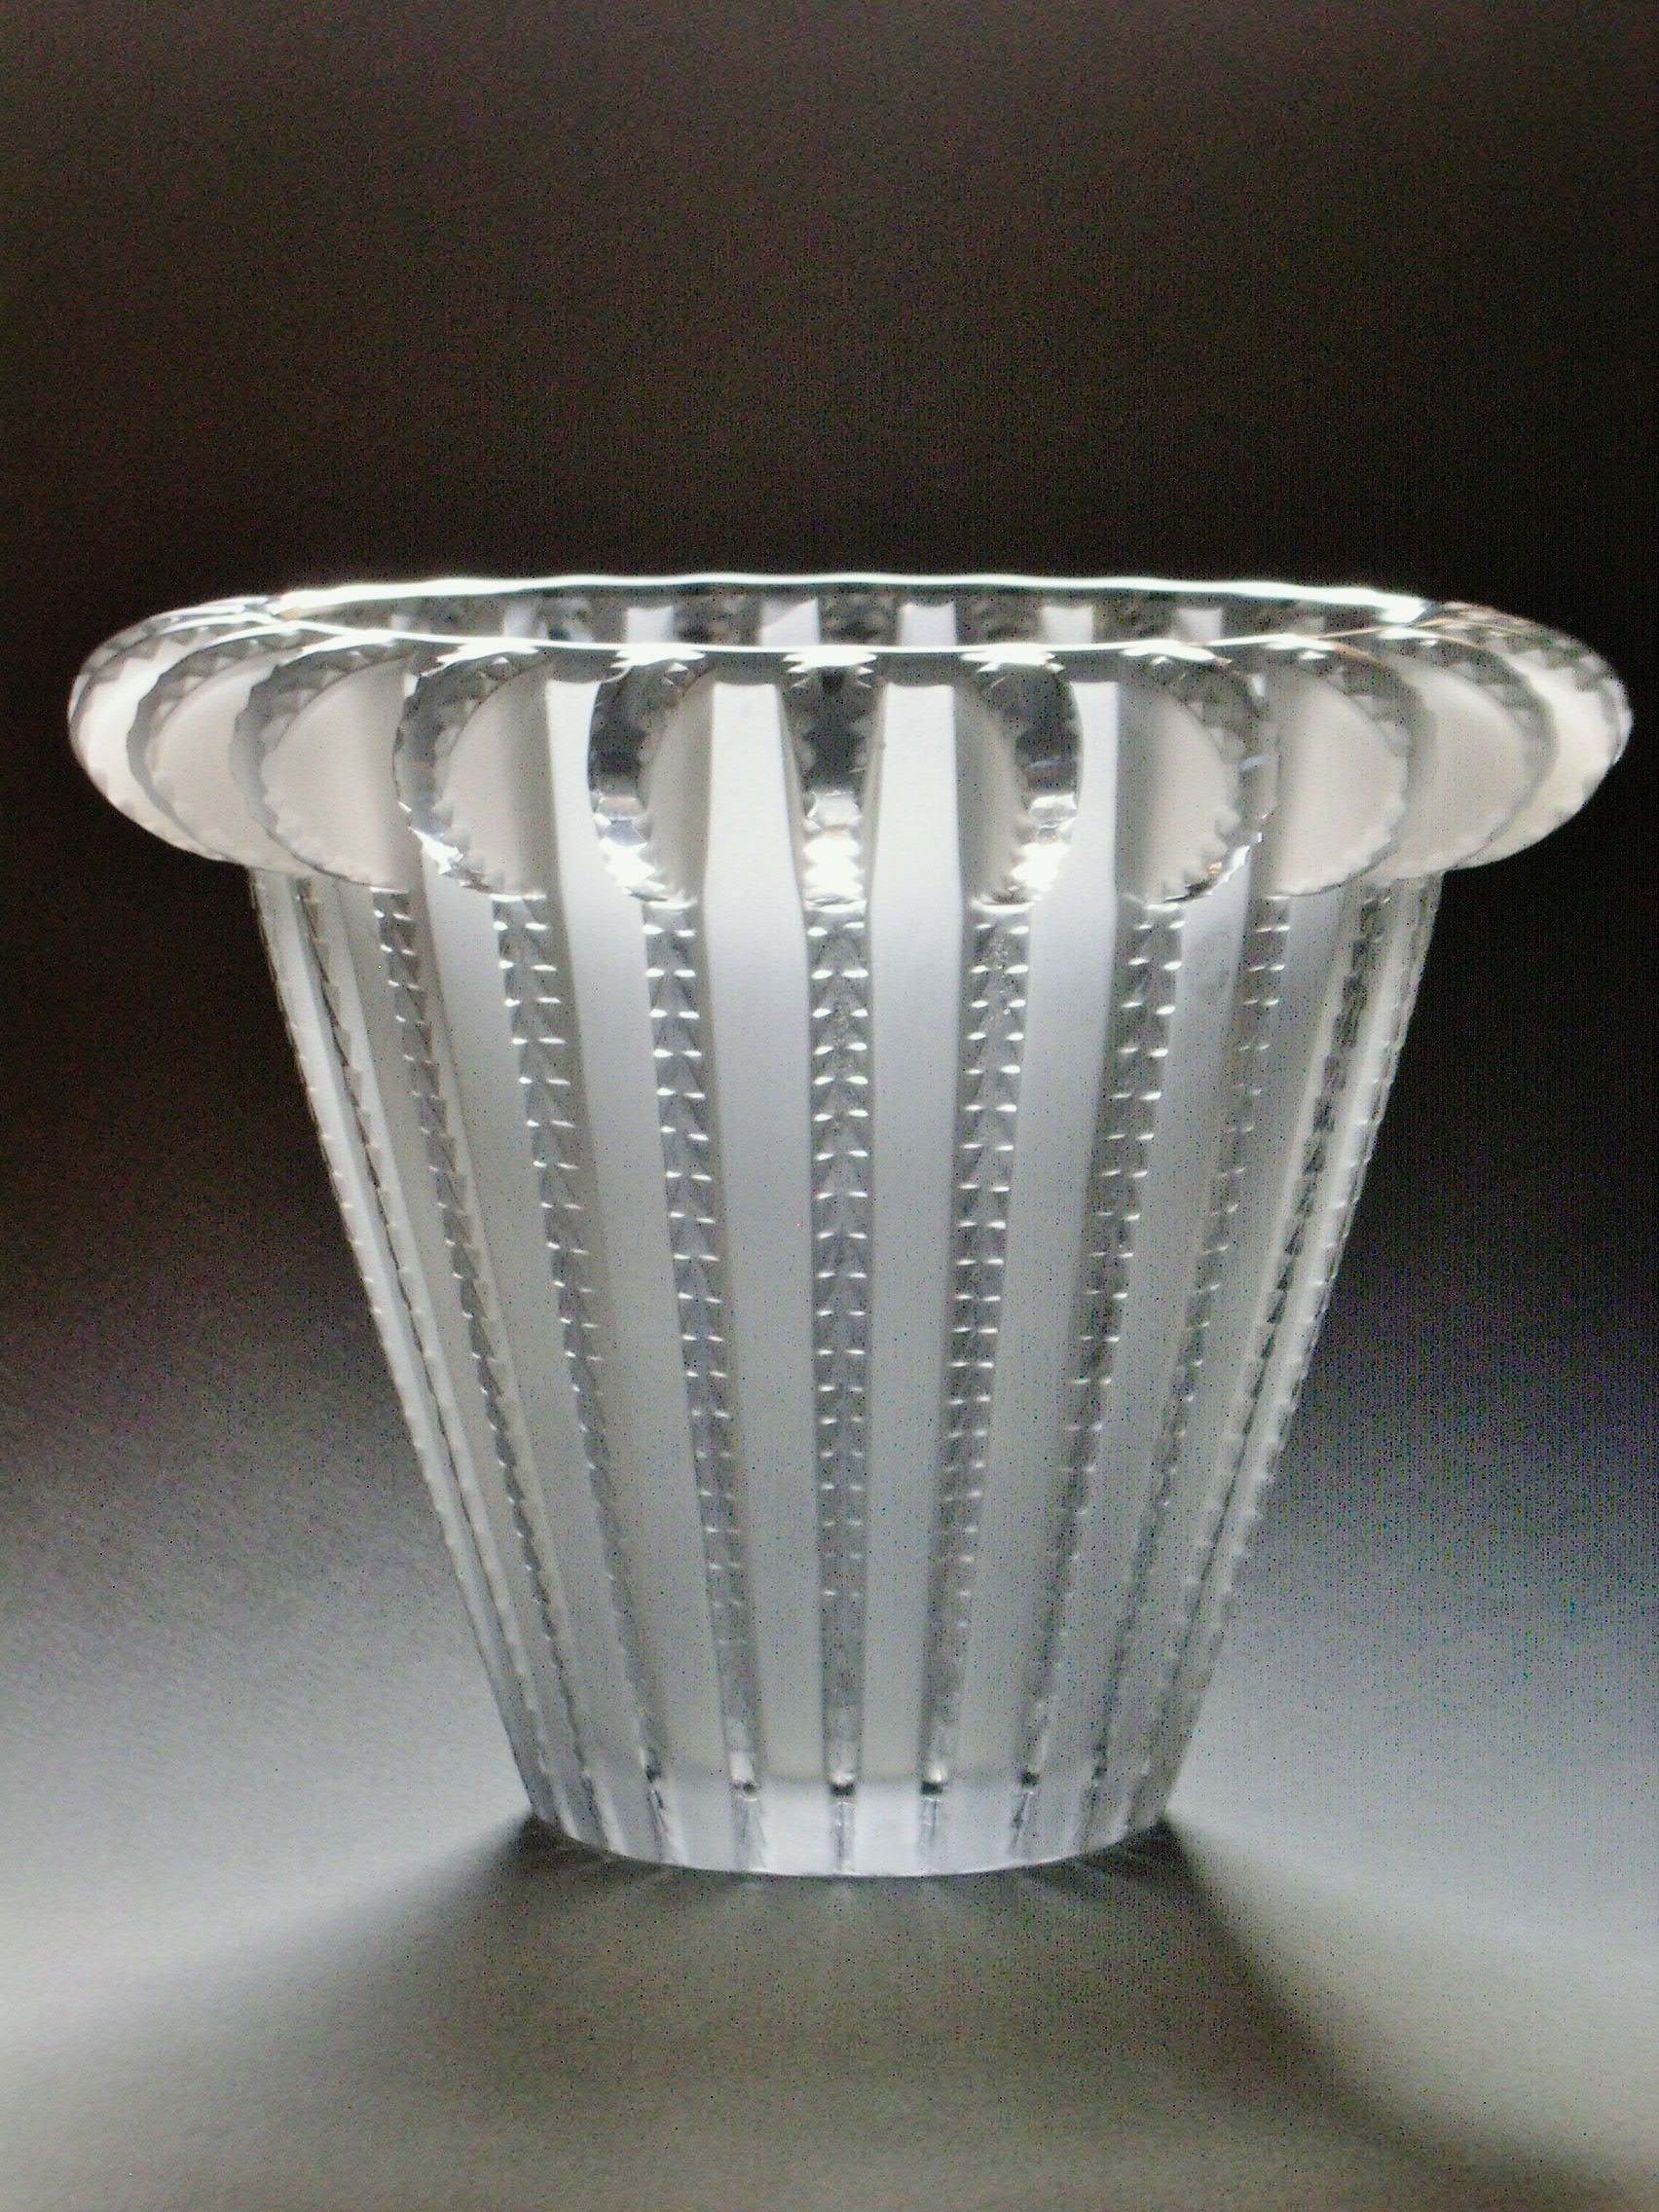 23 Amazing Mini Vase Set 2022 free download mini vase set of 50 smoked glass vase the weekly world with vase royat rene lalique art glass